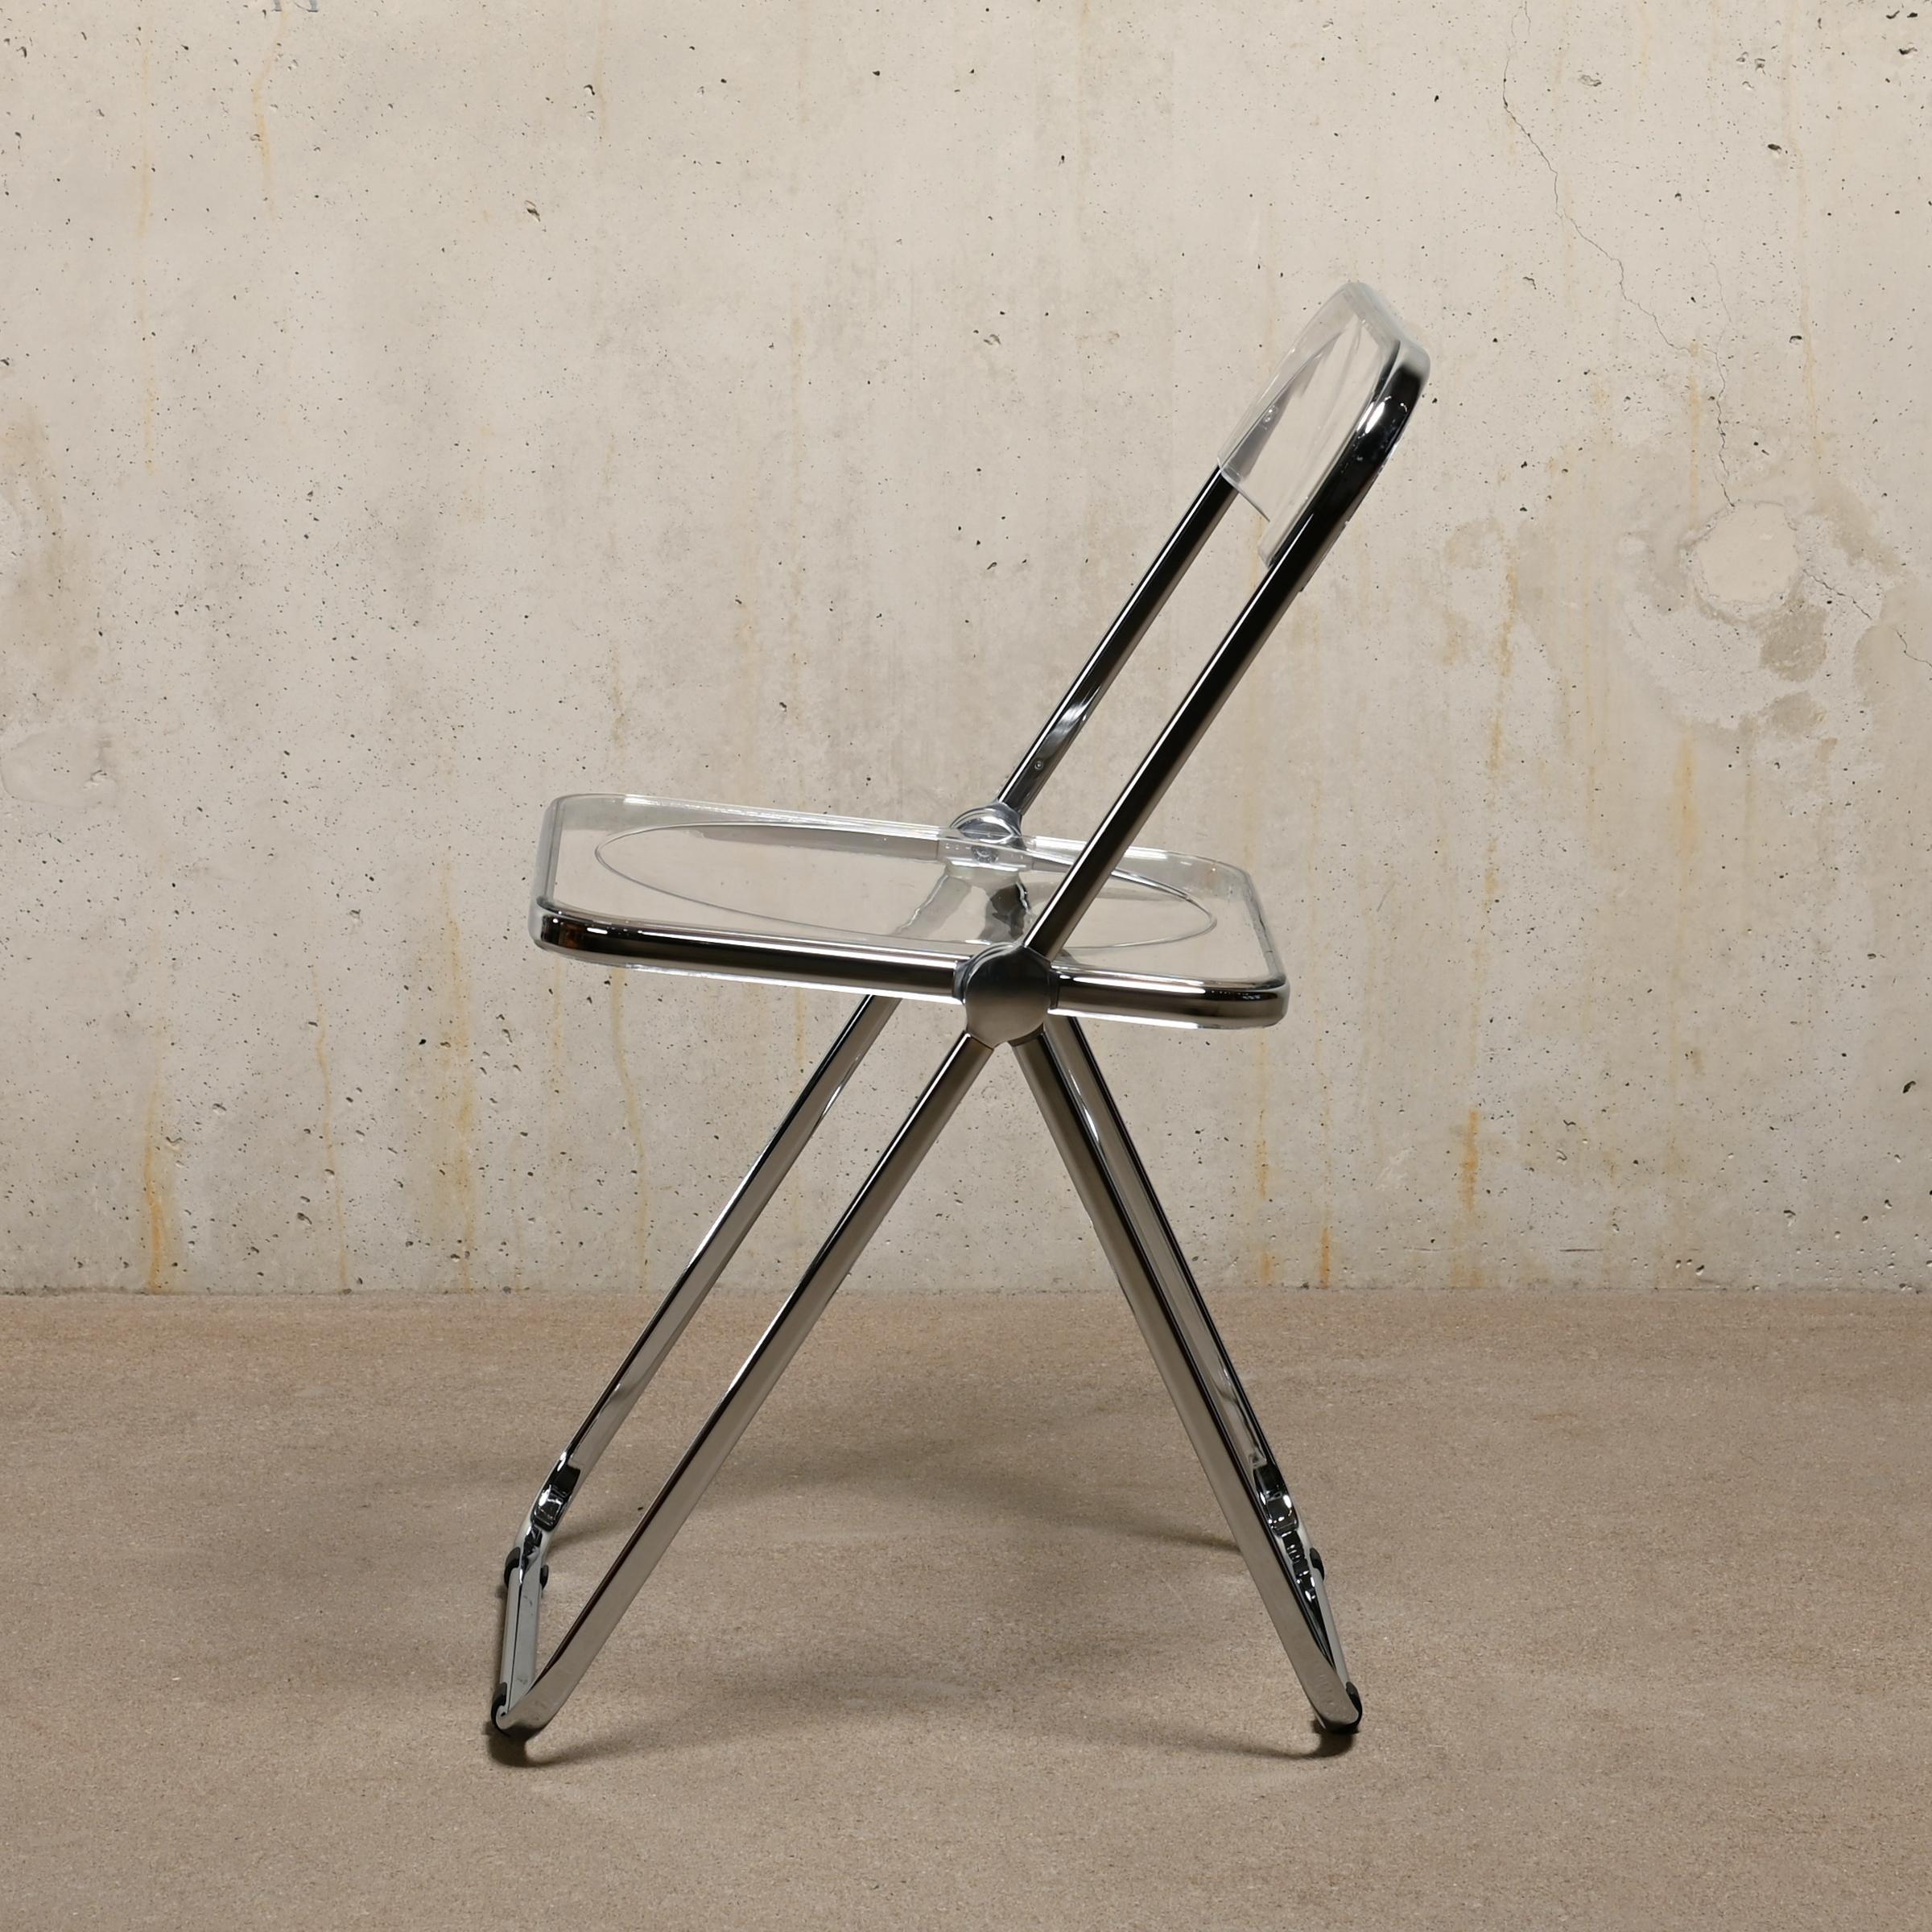 La chaise pliante Plia est un design inventif et magnifique de Giancarlo Piretti pour Castelli en 1967, en Italie. Cette icône figure dans toutes les publications standard sur le design (mobilier) du XXe siècle. Son mécanisme de pliage simple permet